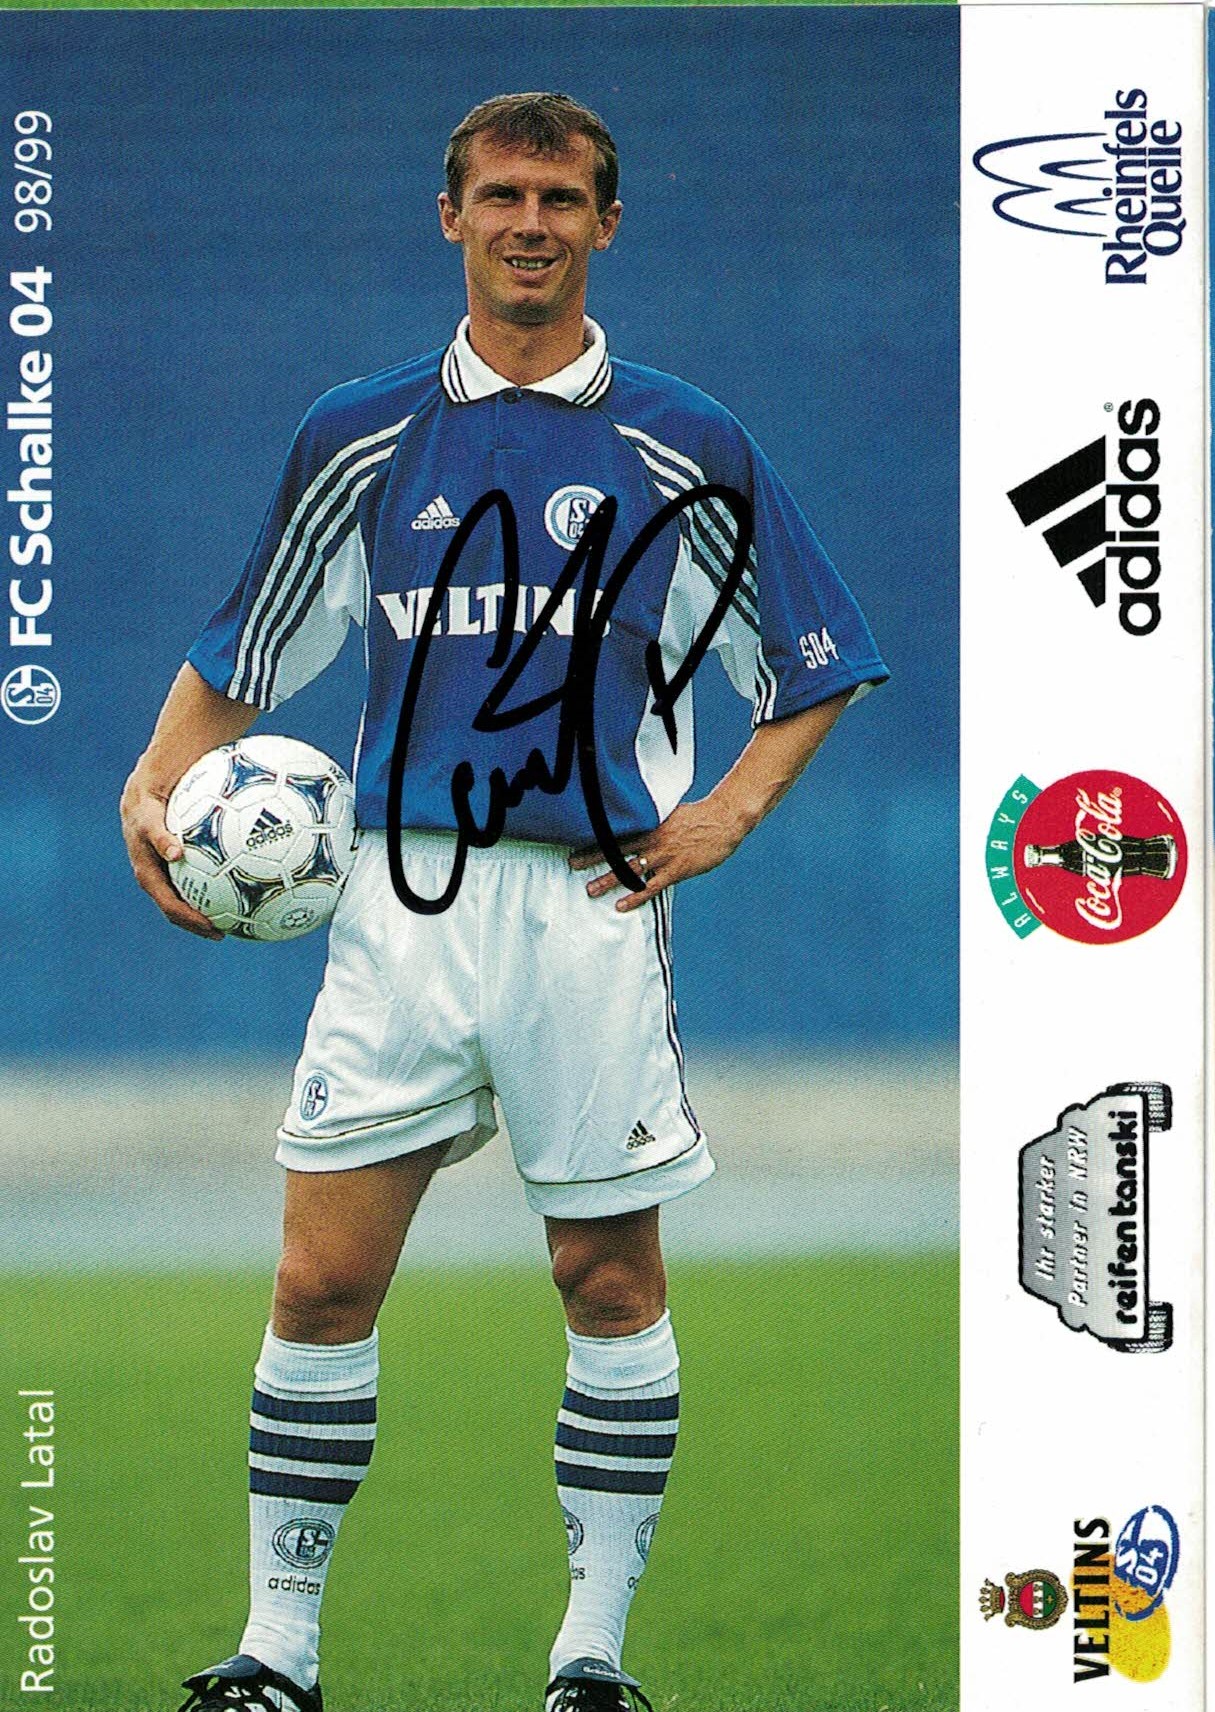 Radoslav Latal Schalke 04 1998/99 Podpisova karta autogram